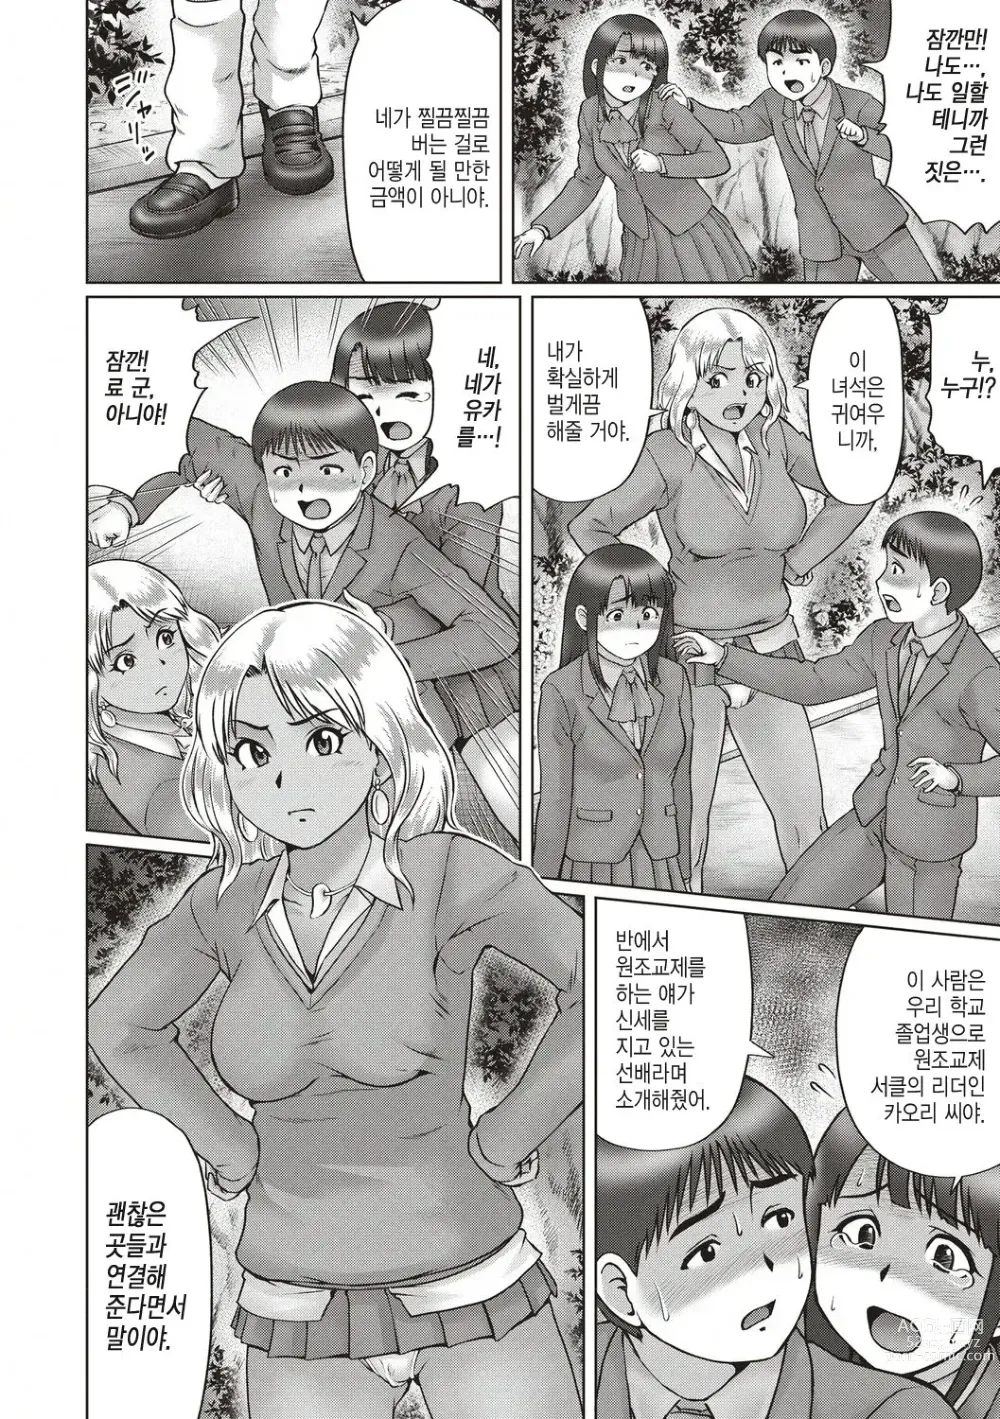 Page 2 of manga 기나긴 밤... -전편-